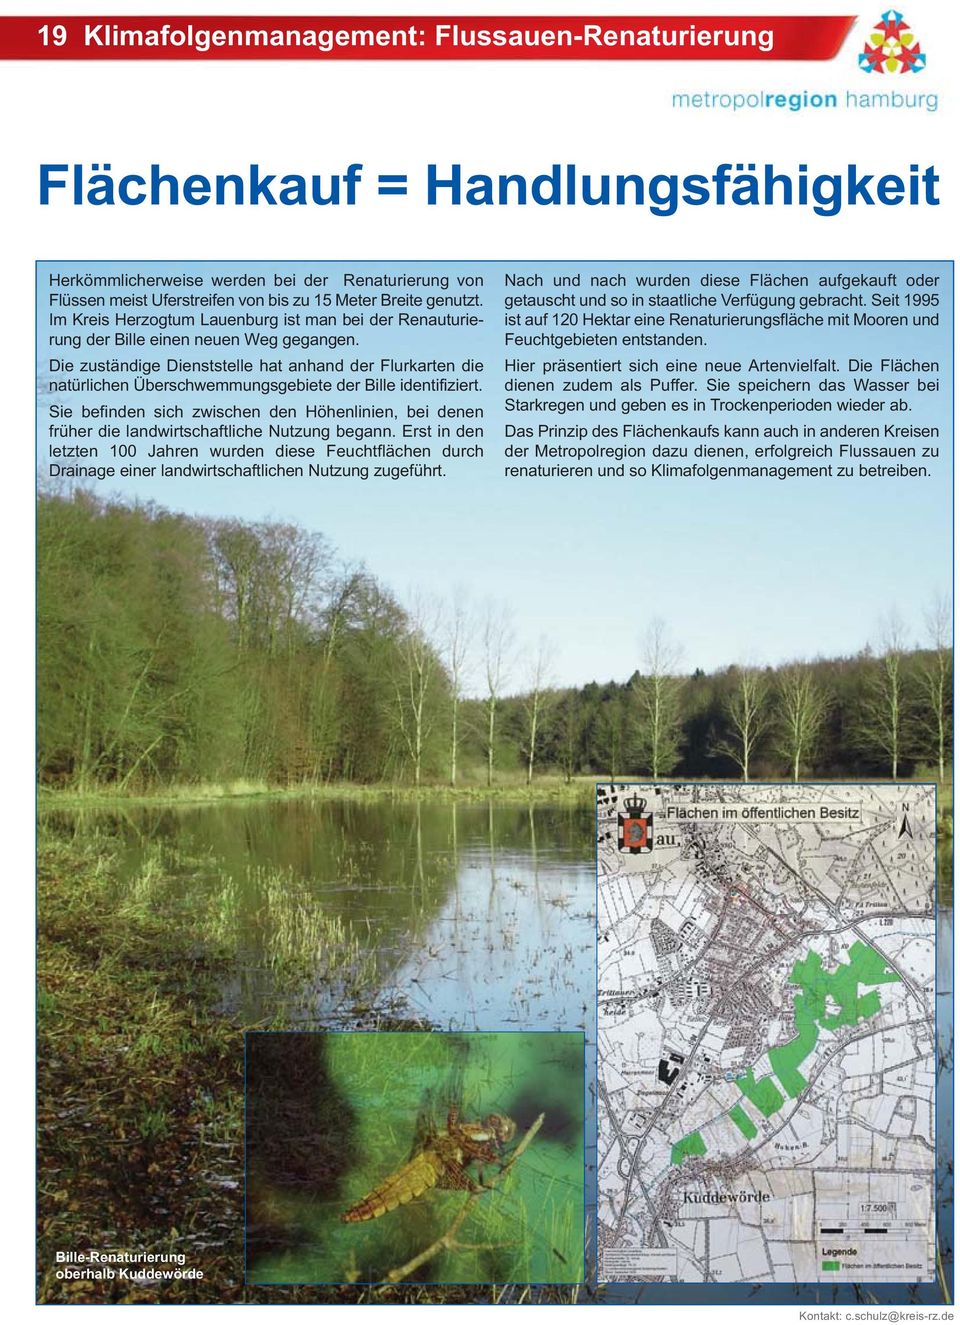 Die zuständige Dienststelle hat anhand der Flurkarten die natürlichen Überschwemmungsgebiete der Bille identifiziert.